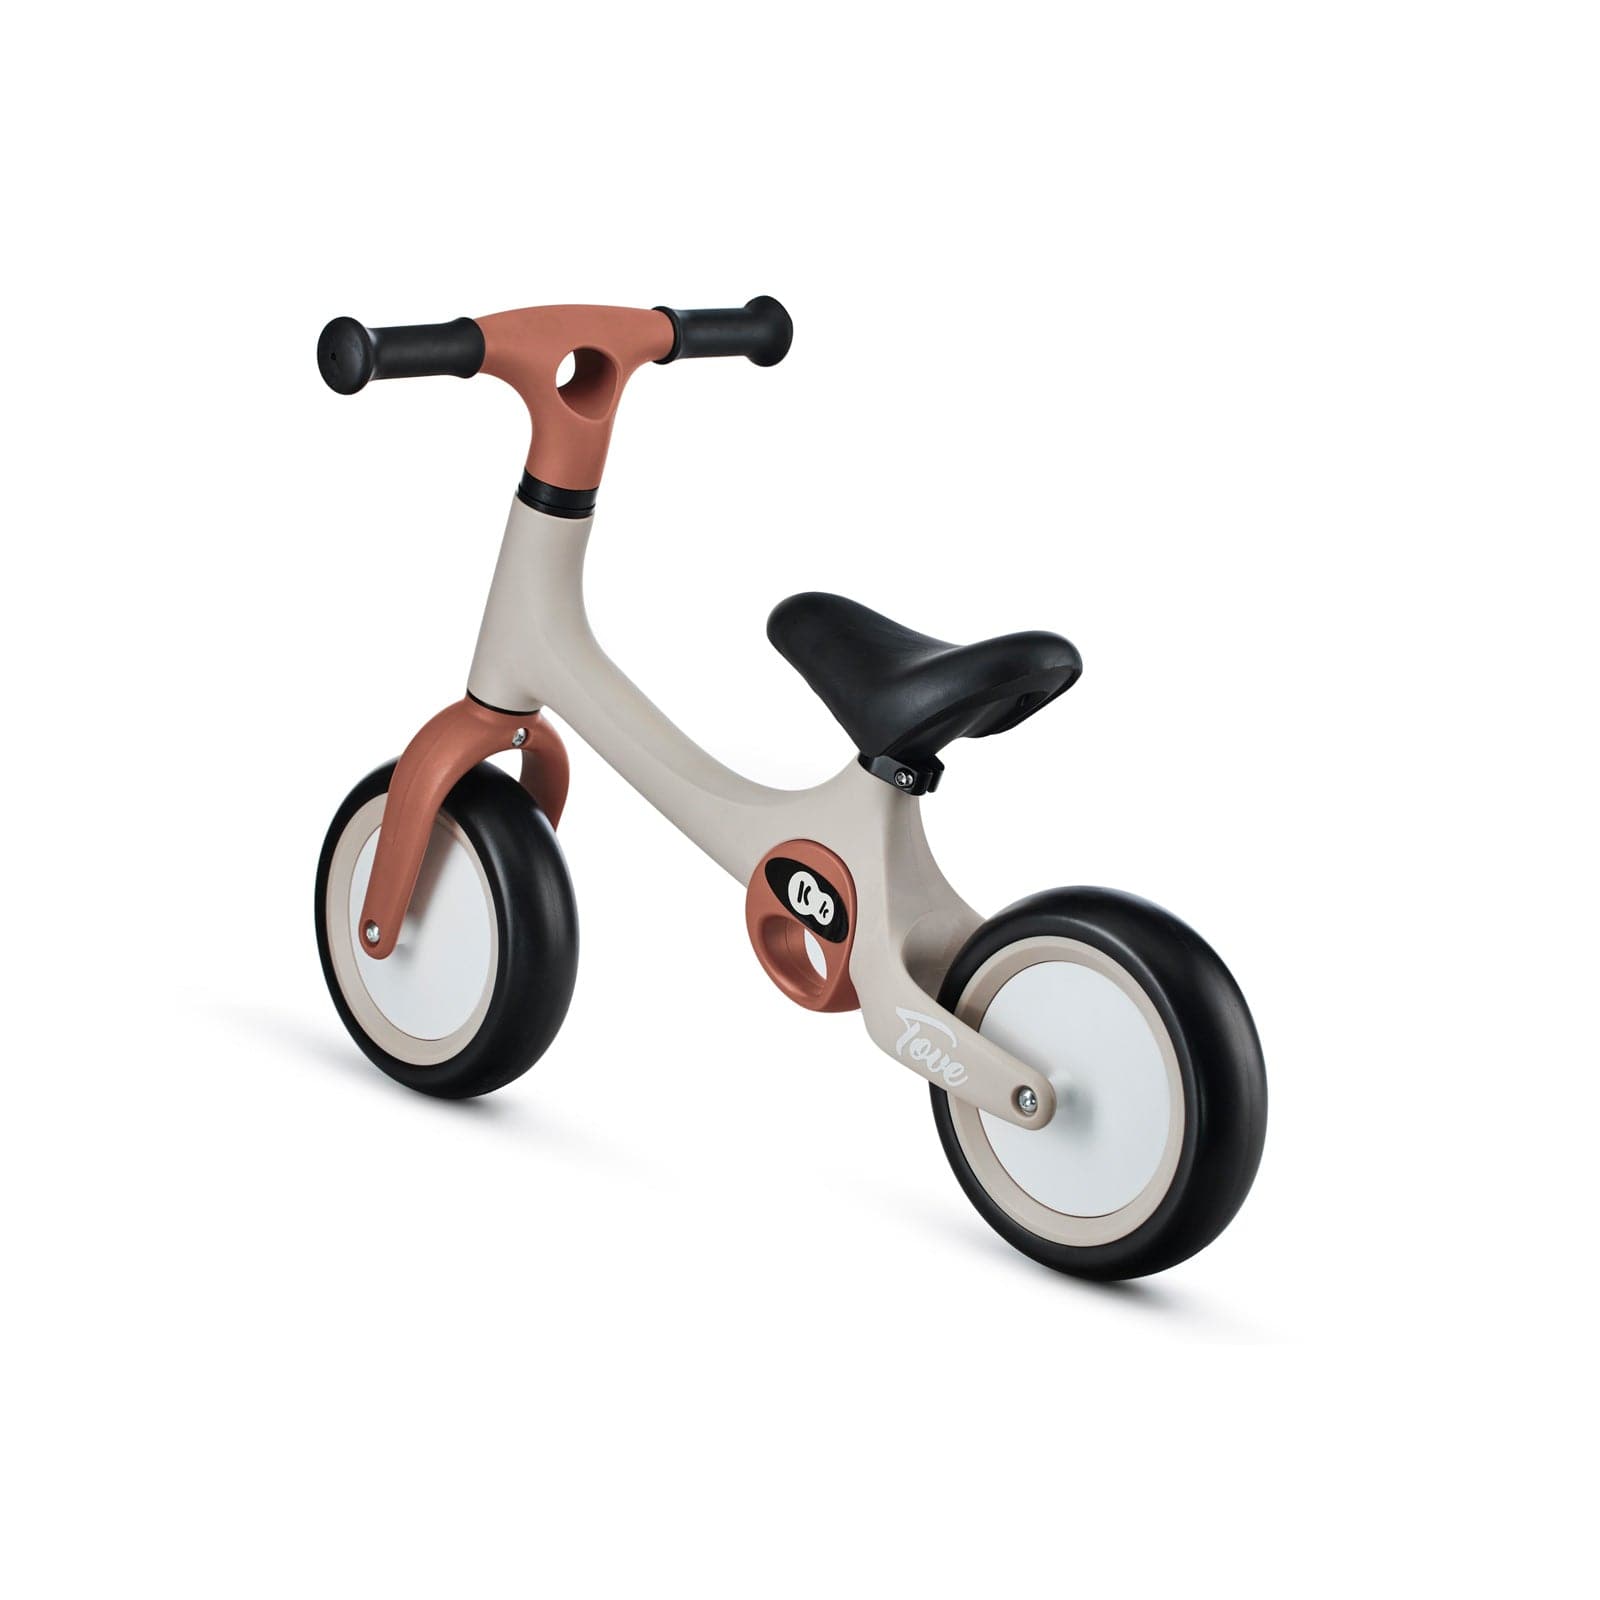 Kinderkraft Tove Balance Bike Desert Beige -  | For Your Little One